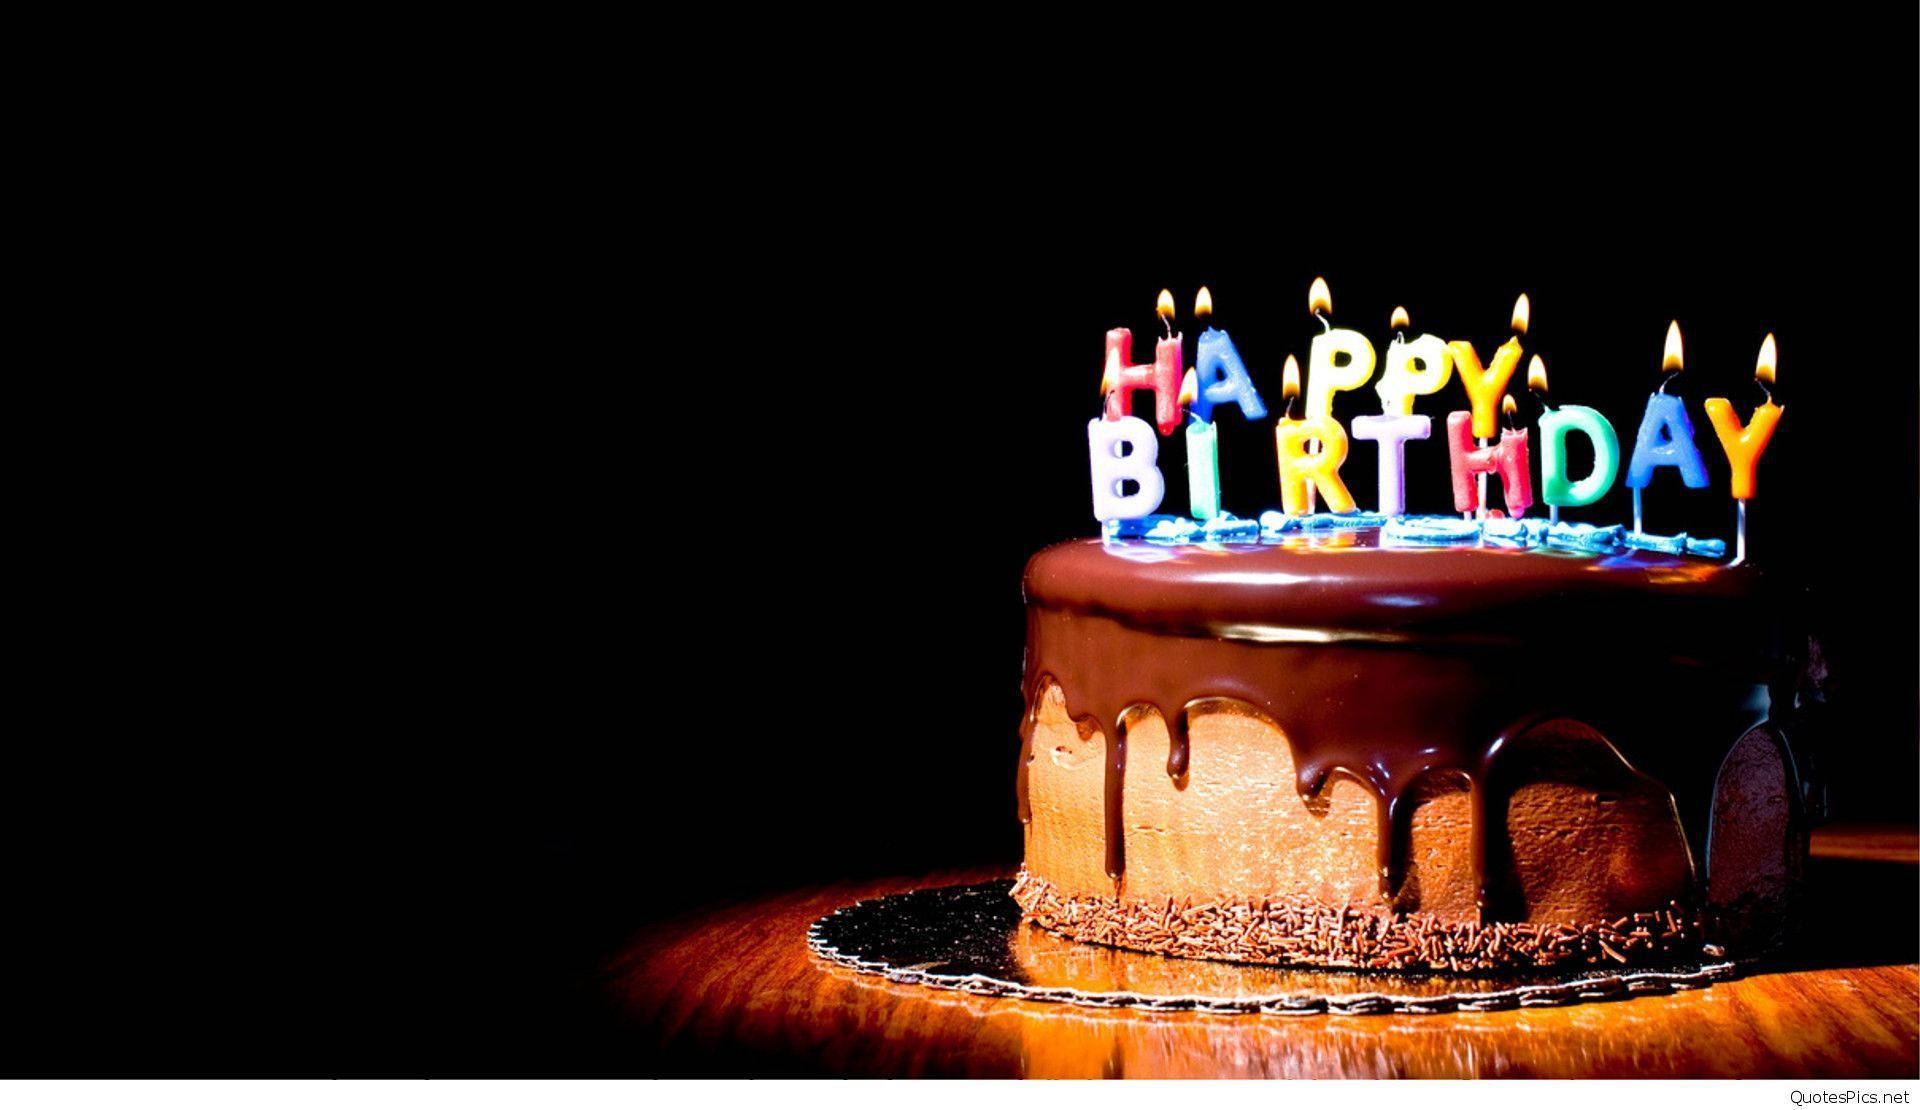 Happy Birthday Cake In Black